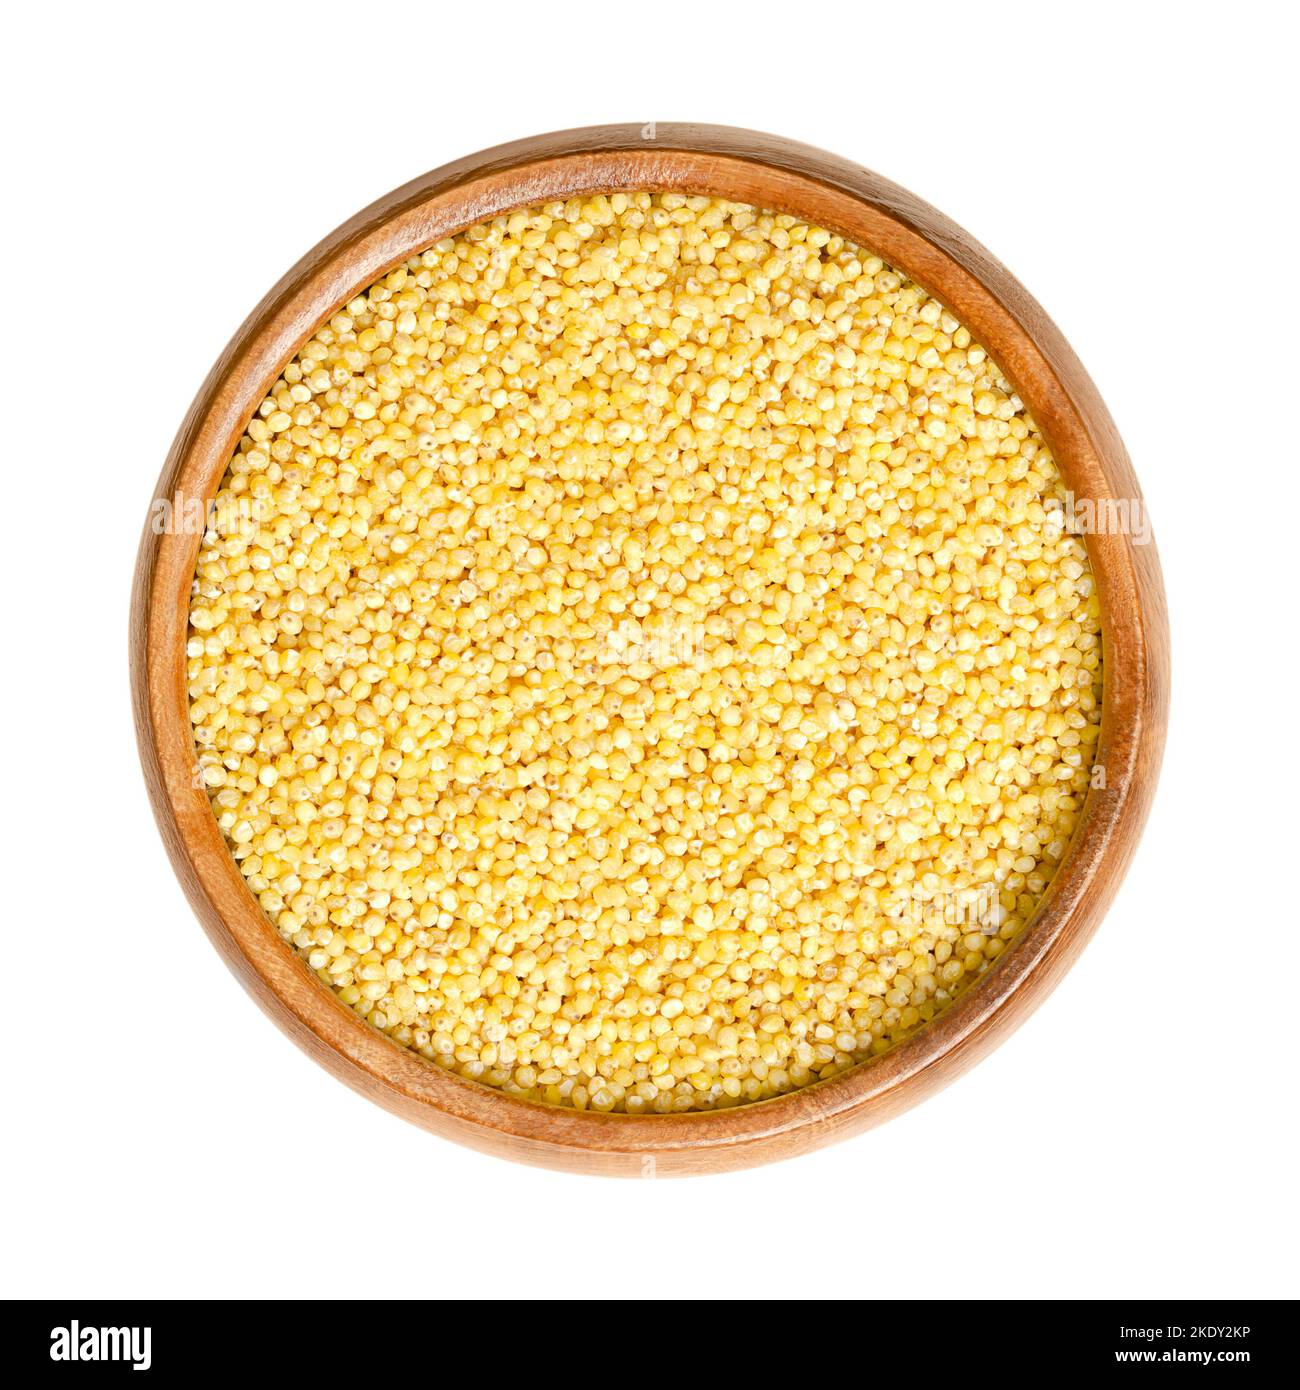 El mijo amarillo descascarado, en un tazón de fuente de madera. Cereales anuales de grano pequeño, pertenecientes a la tribu Paniceae. El grano libre de gluten, el grano más nutritivo. Foto de stock